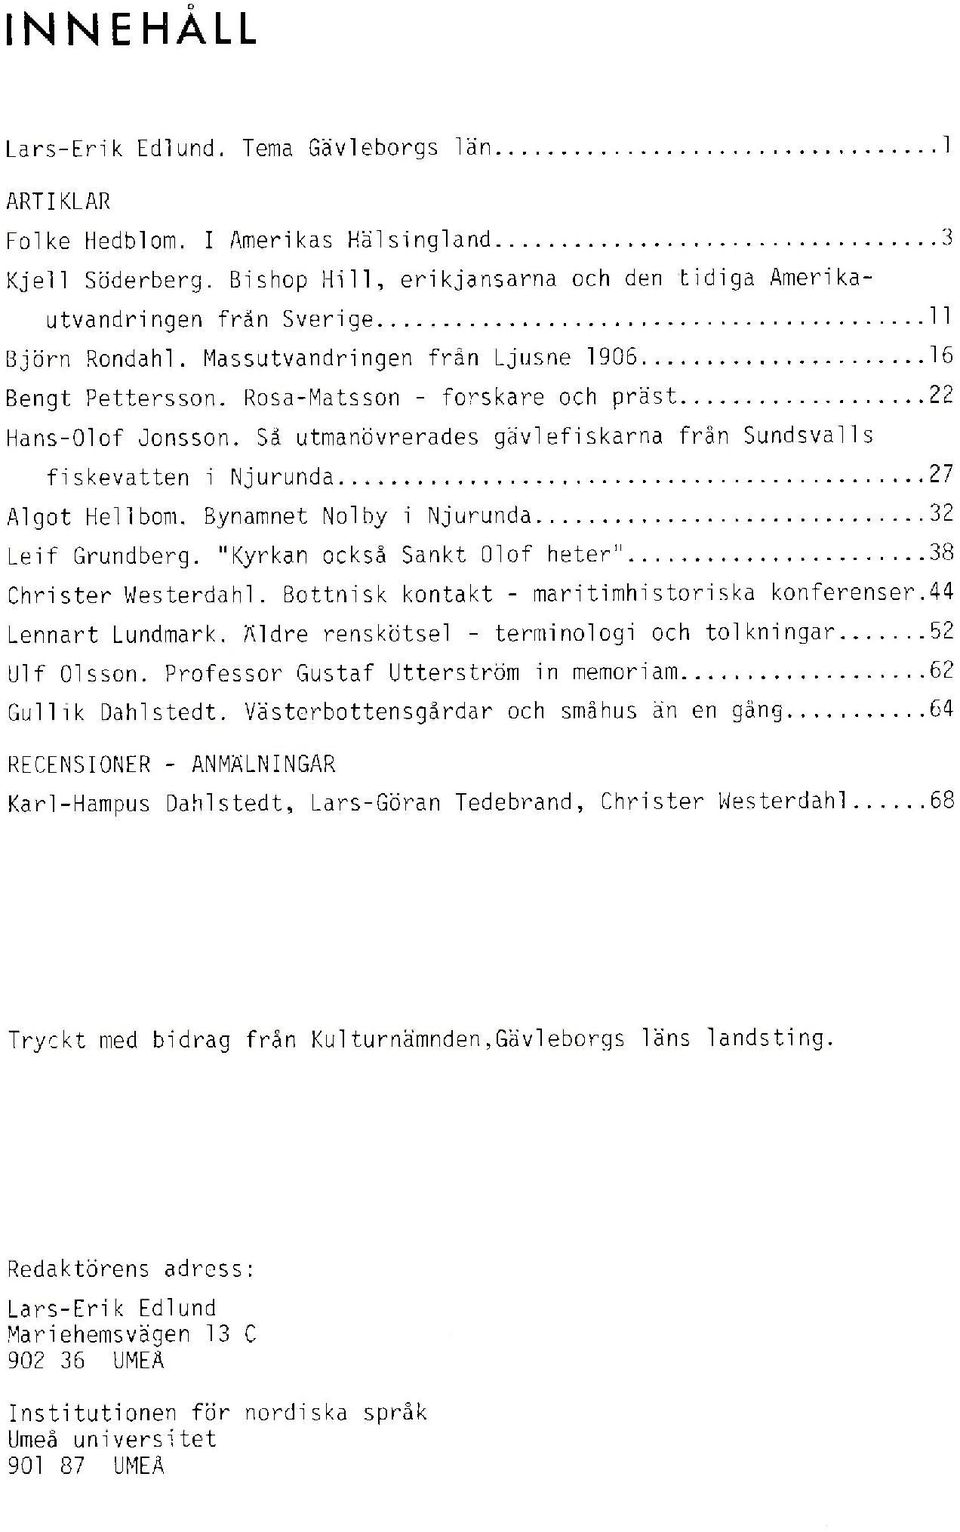 Rosa-Matsson - forskare och präst 22 Hans-Olof Jonsson. Så utmanövrerades gävlefiskarna från Sundsvalls fiskevatten i Njurunda 27 Algot Hellbom. Bynamnet Nolby i Njurunda 32 Leif Grundberg.